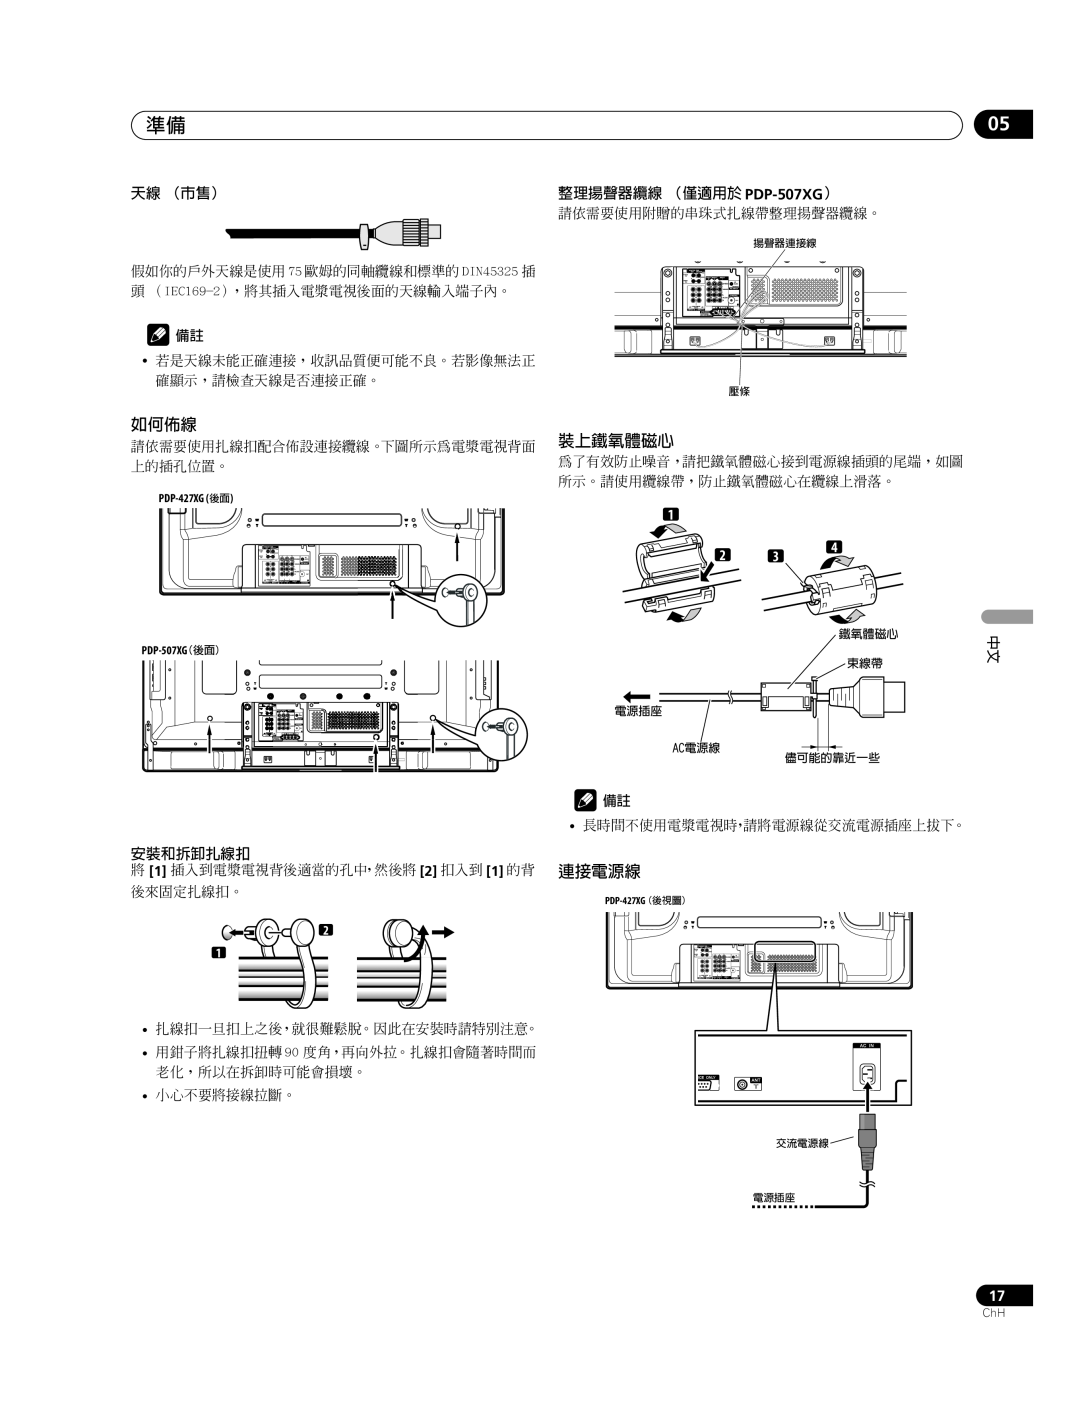 Pioneer PDP-427XG manual 如何佈線, 裝上鐵氧體磁心, 連接電源線, 天線 （市售）, 整理揚聲器纜線 （僅適用於 PDP-507XG）, 安裝和拆卸扎線扣 